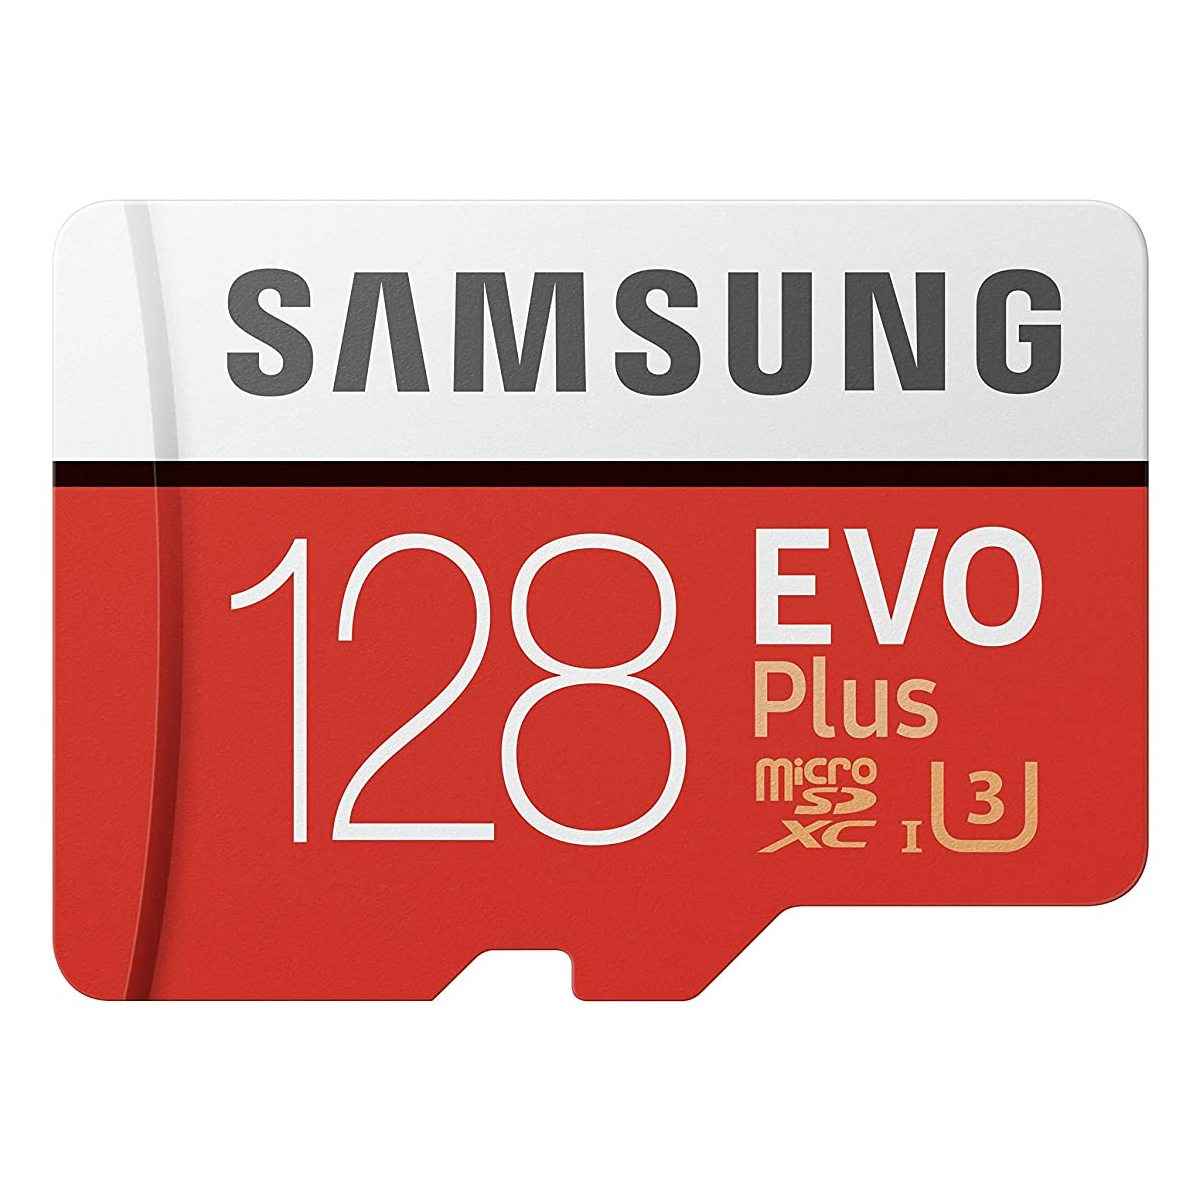 శామ్సంగ్ EVO Plus 128 GB 